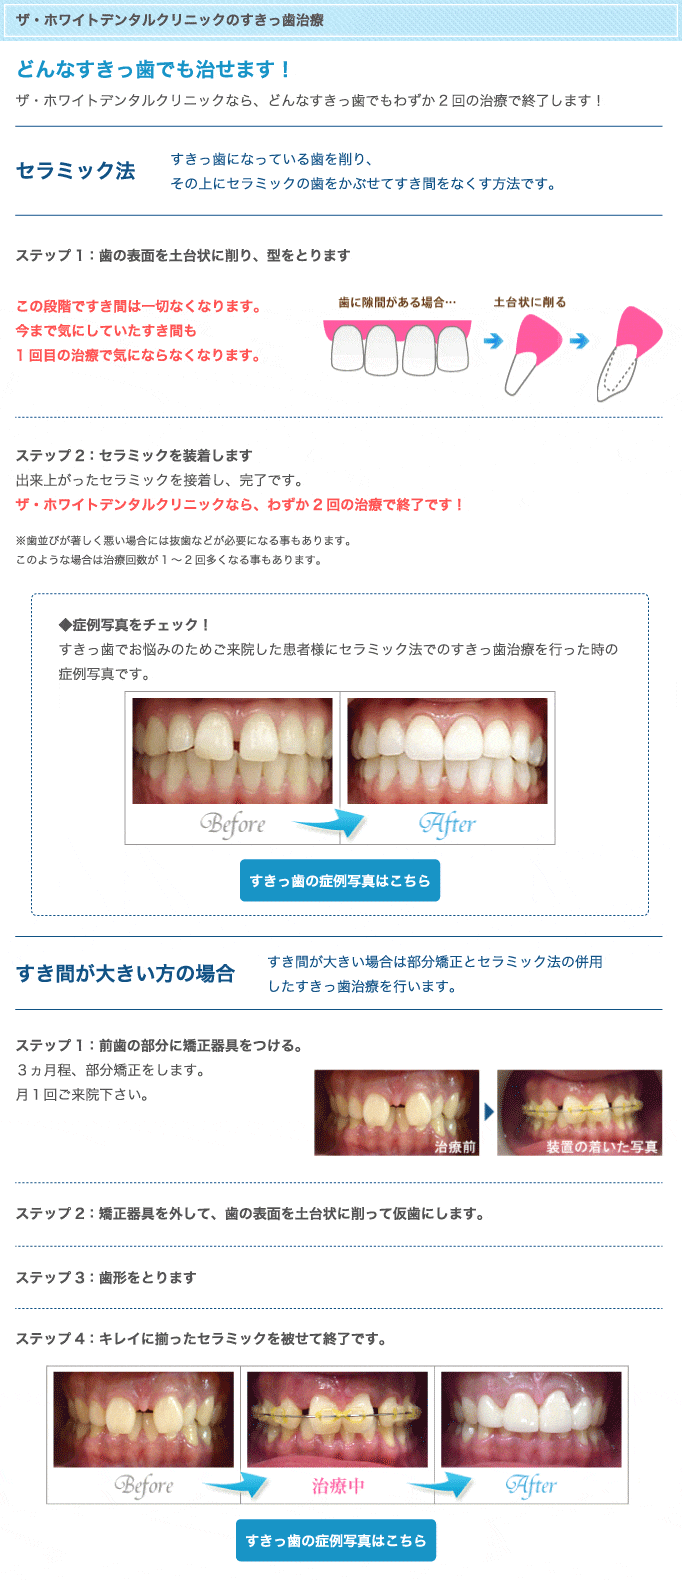 ザ・ホワイトデンタルクリニックのすきっ歯治療